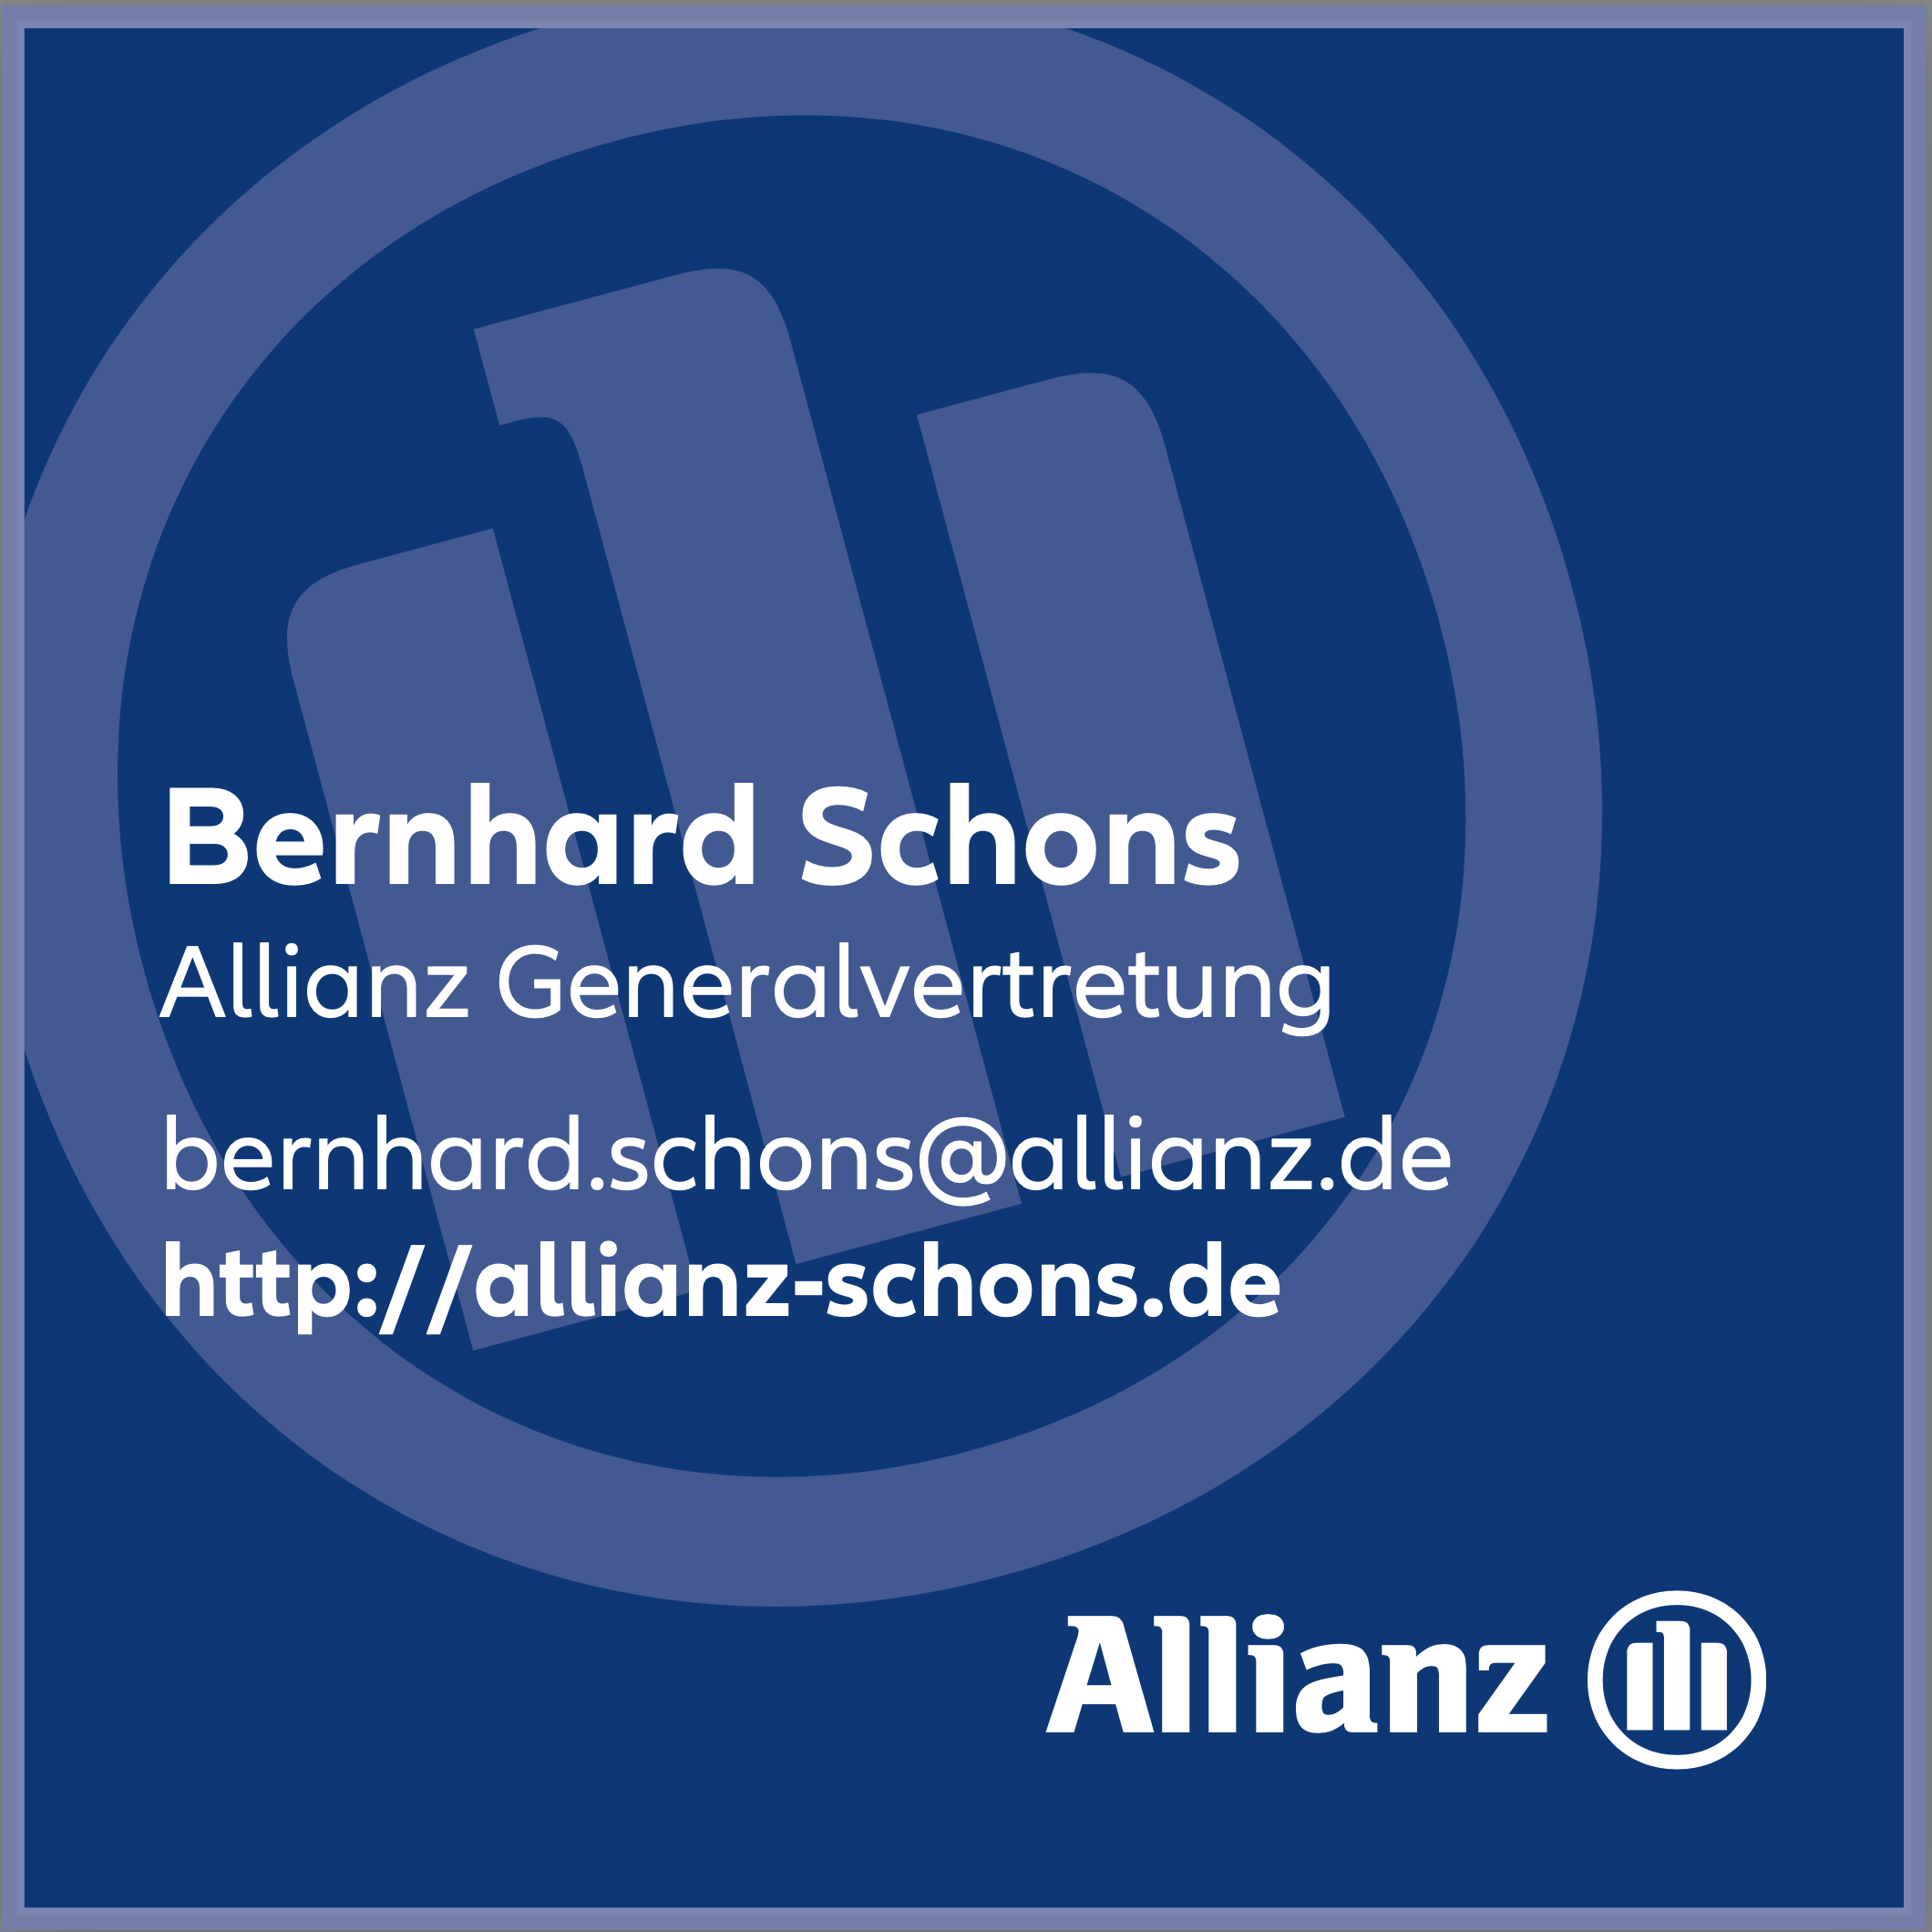 Allianz Generalvertretung Bernhard Schons